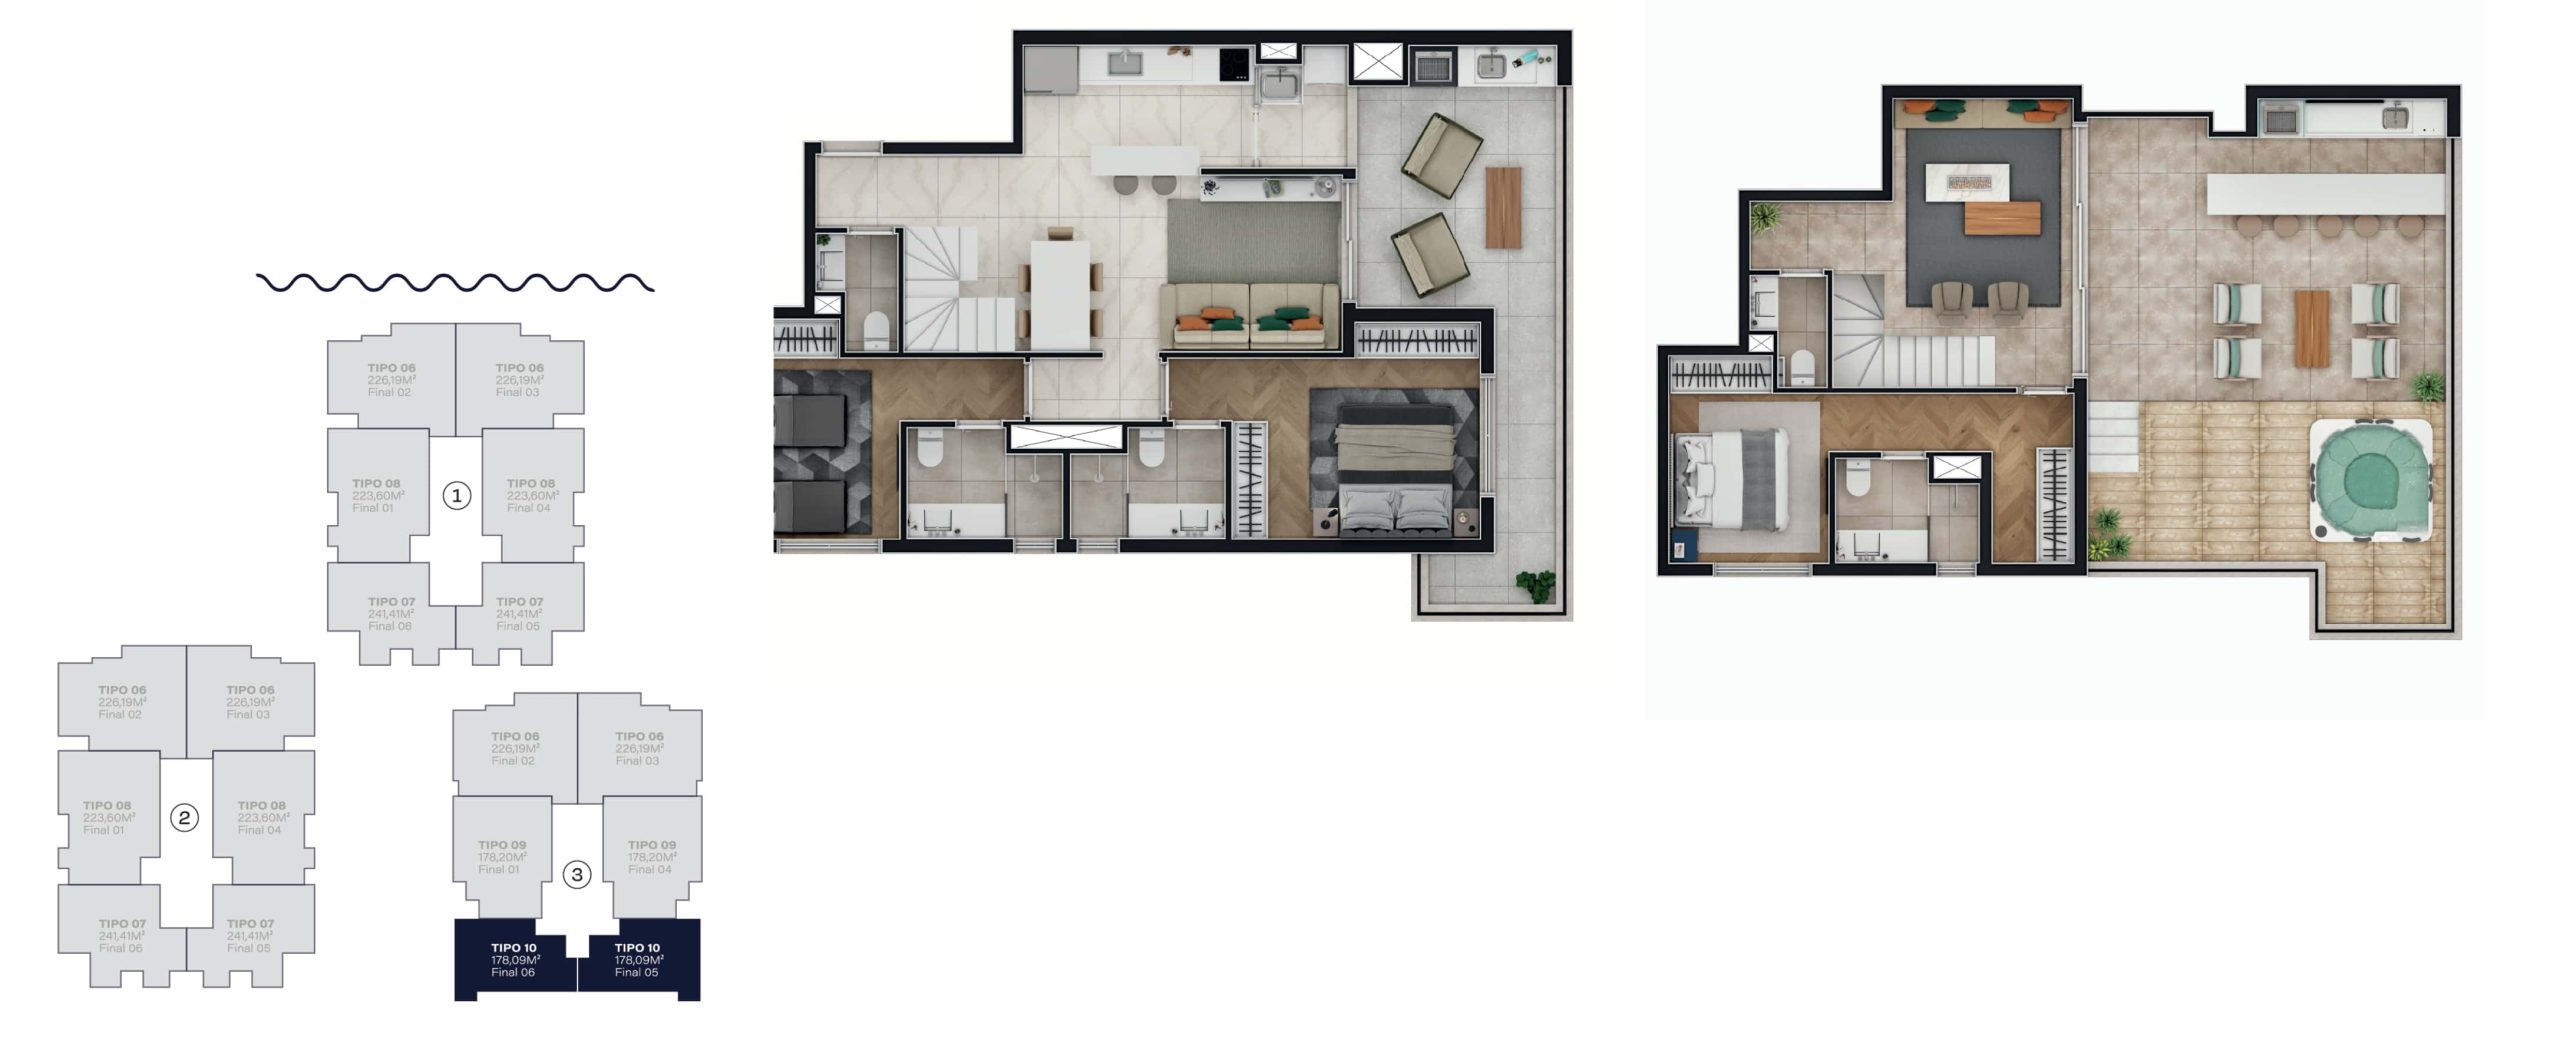 Duplex - Unidade com 178,09 m²<